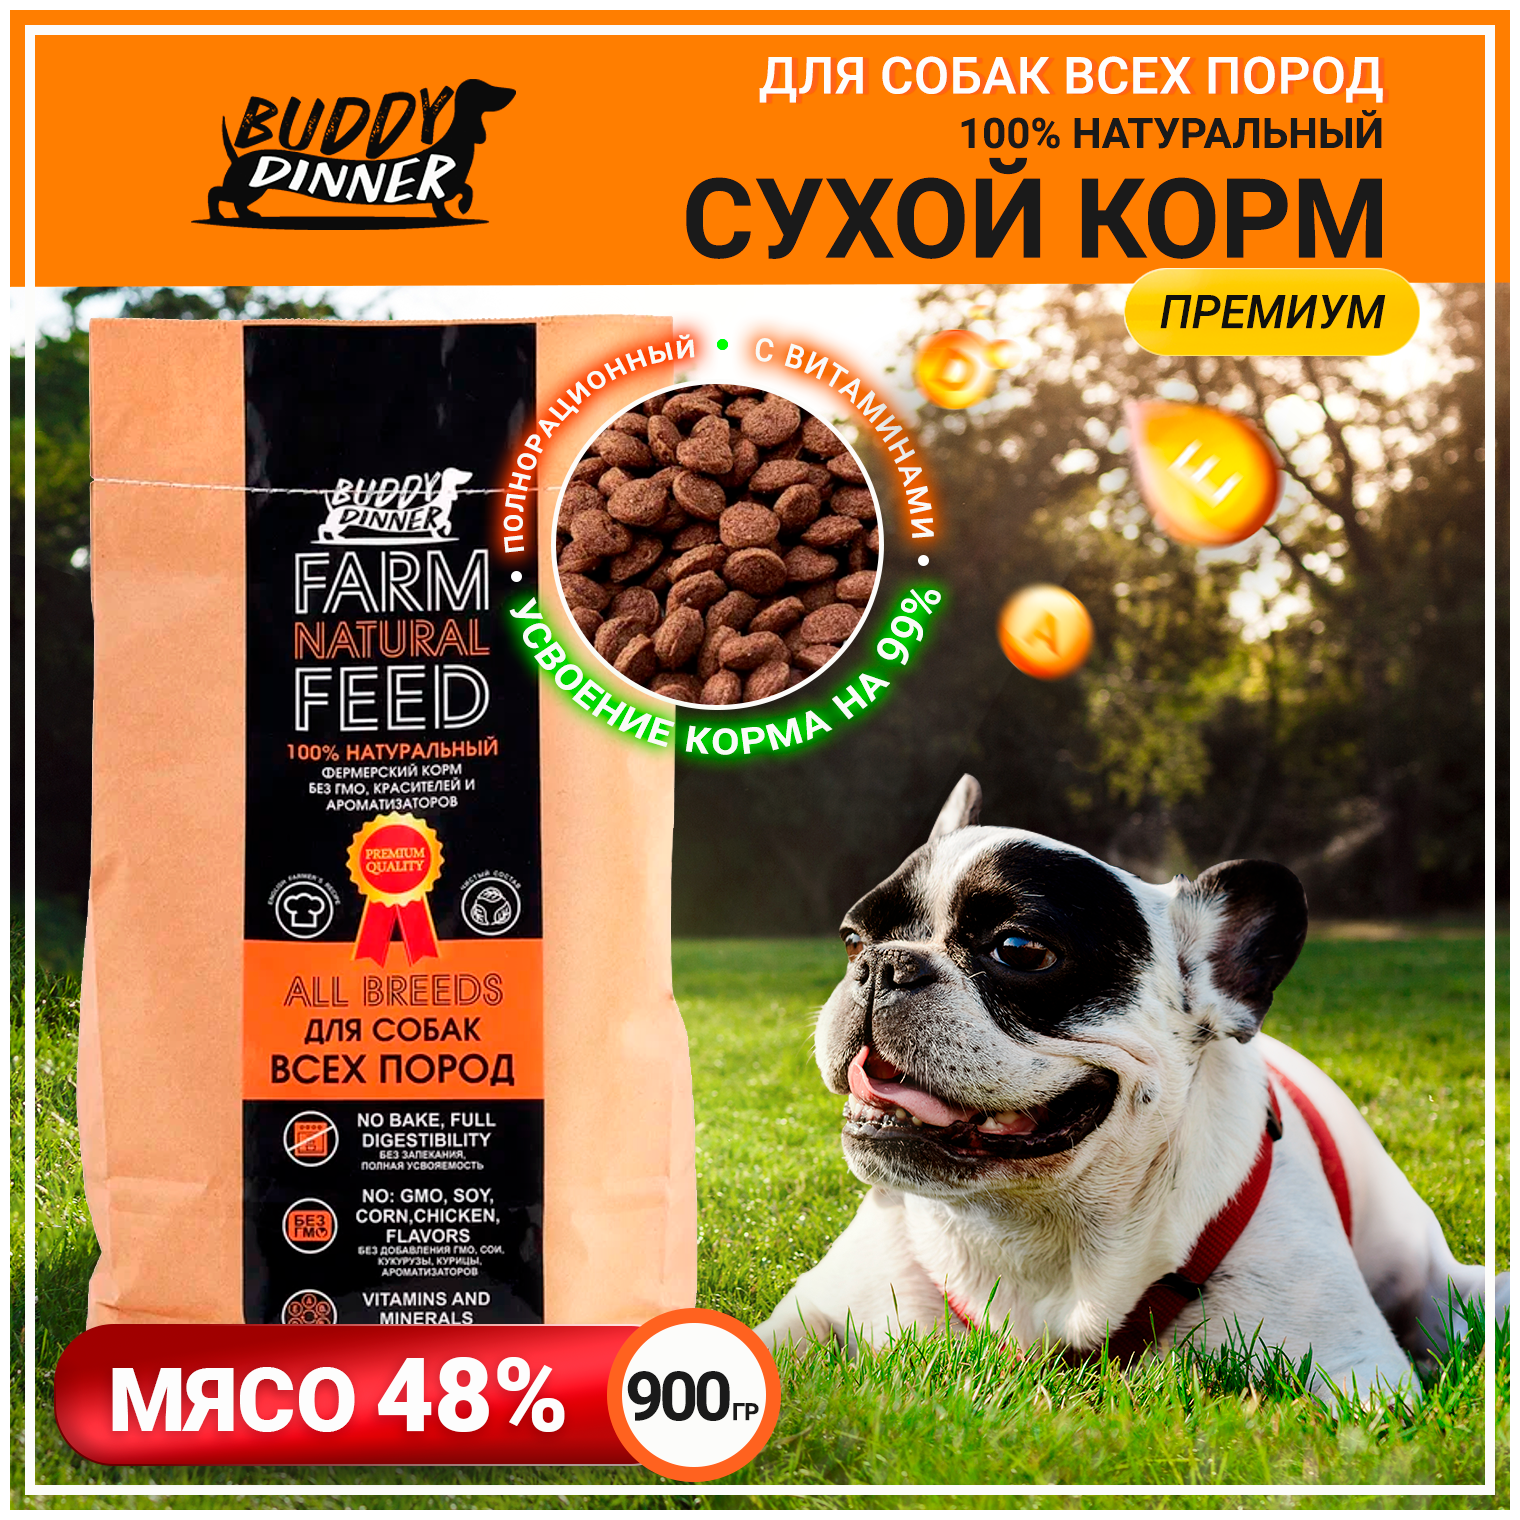 Корм сухой для собак всех пород BUDDY DINNER Премиум класса Orange Line, гипоаллергенный, полнорационный,100% натуральный состав, с говядиной, 900 г